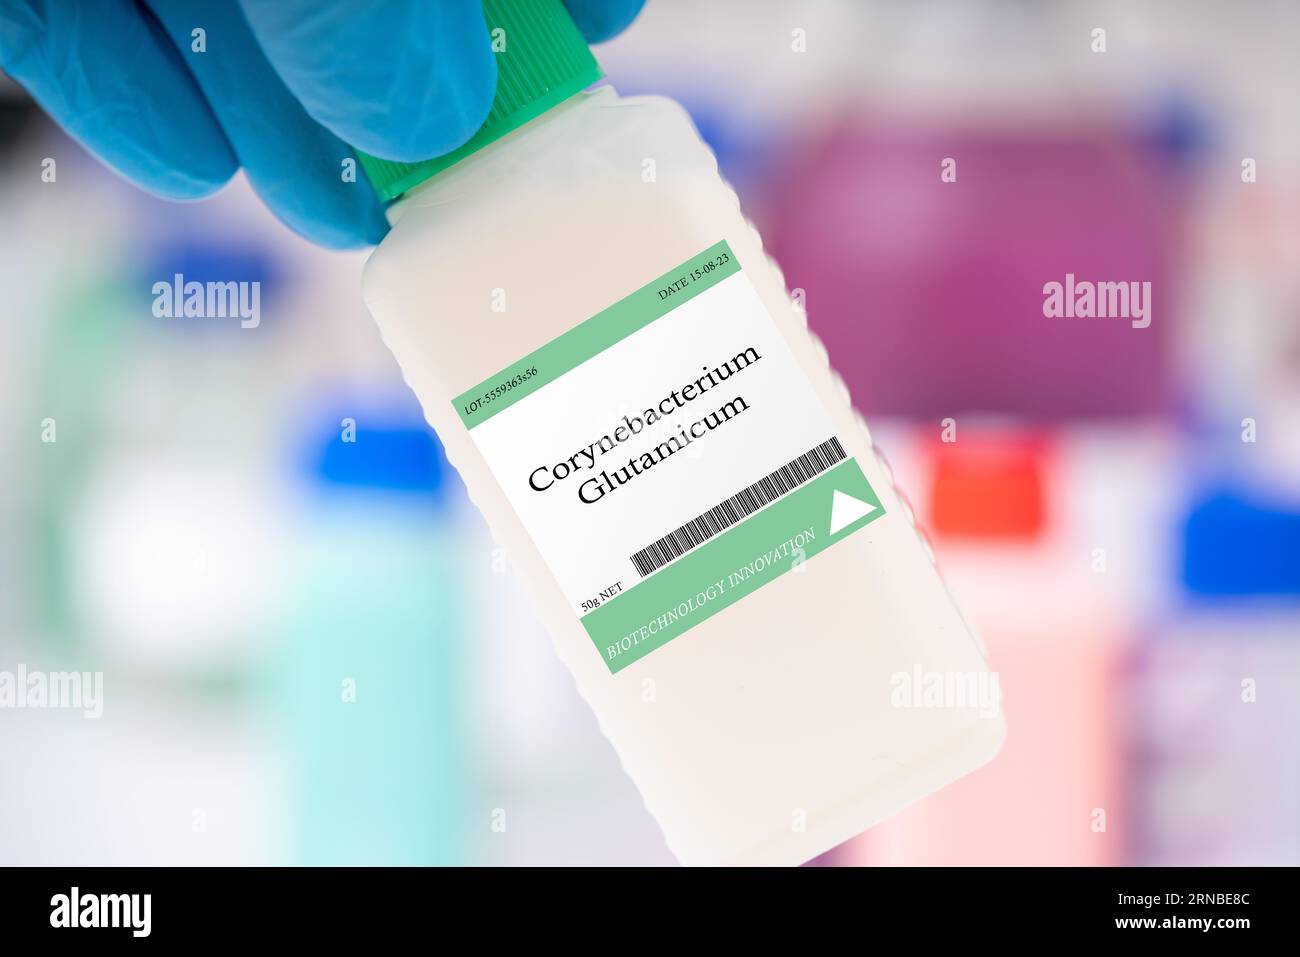 Corynebacterium glutamicum-Bakterien, die zur Herstellung von Aminosäuren und Geschmacksverstärkern verwendet werden. Stockfoto